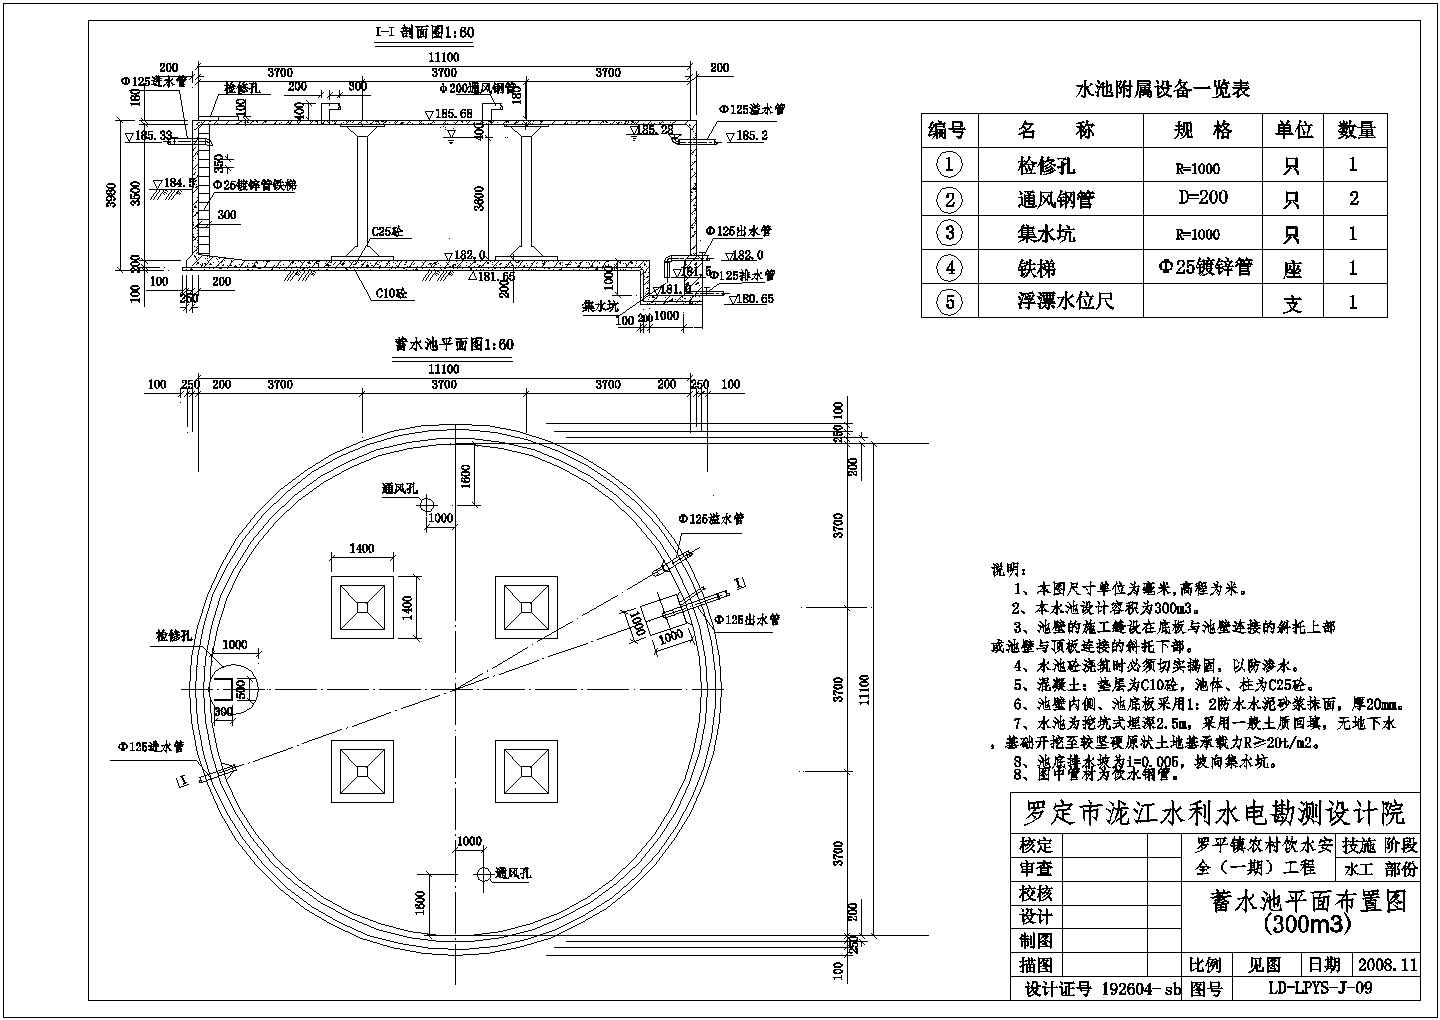 【罗定市】300m3蓄水池技术施工图